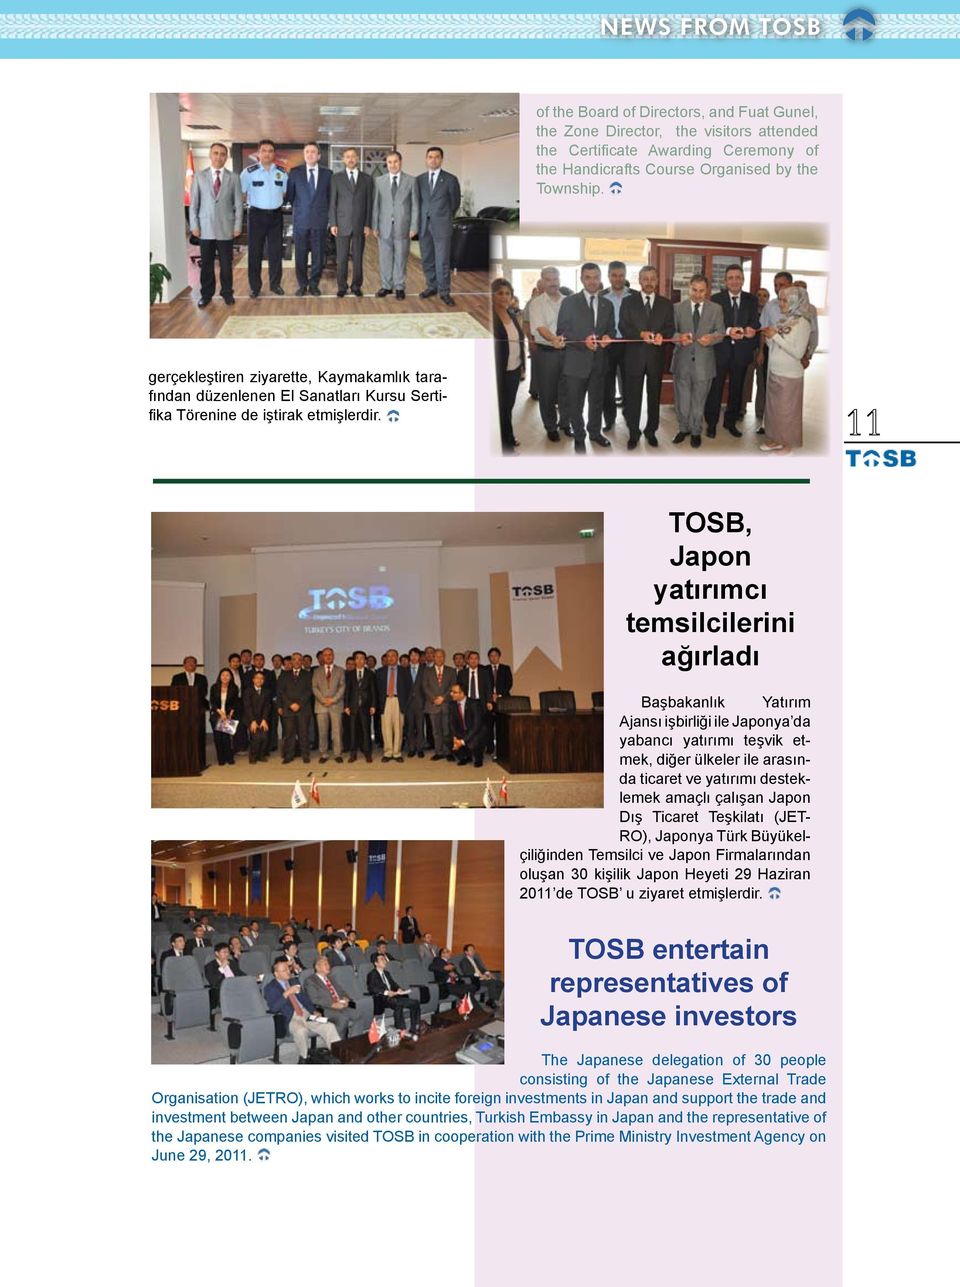 TOSB, Japon yatırımcı temsilcilerini ağırladı Başbakanlık Yatırım Ajansı işbirliği ile Japonya da yabancı yatırımı teşvik etmek, diğer ülkeler ile arasında ticaret ve yatırımı desteklemek amaçlı